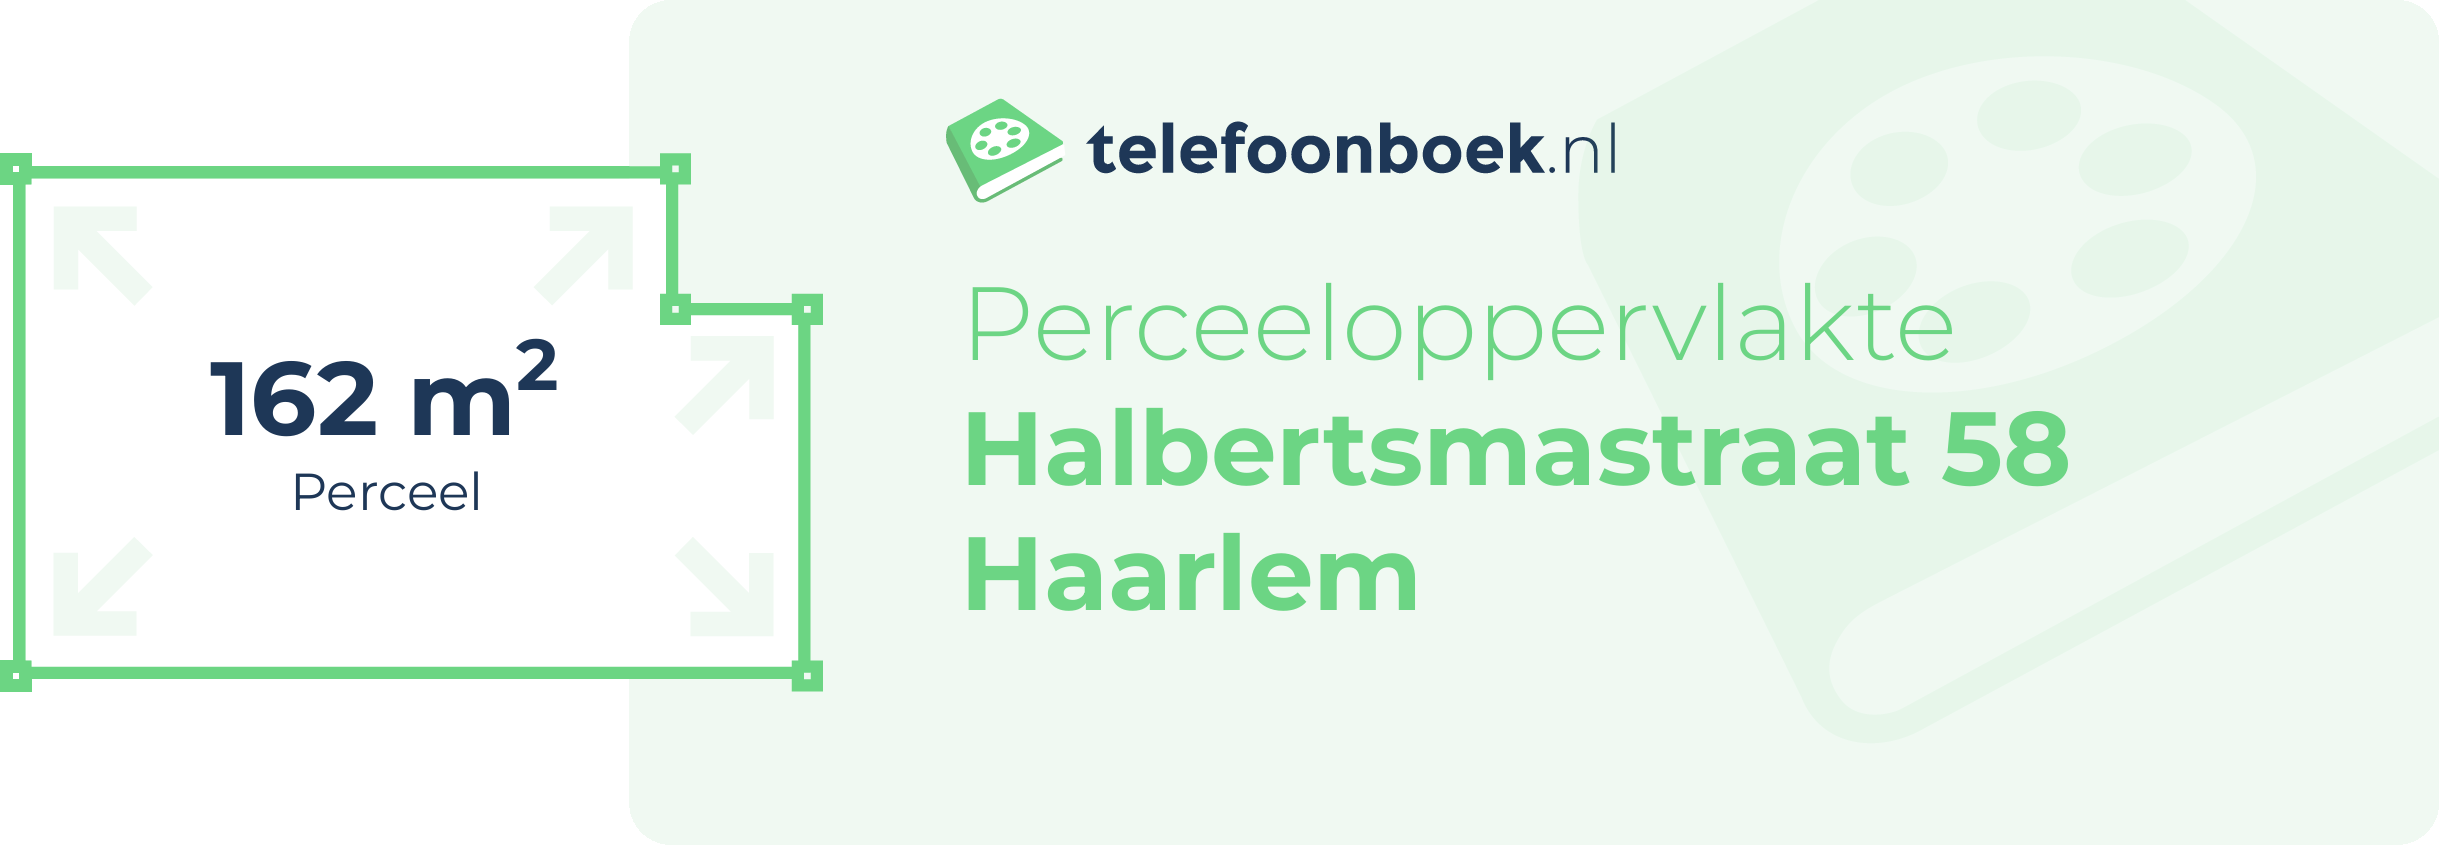 Perceeloppervlakte Halbertsmastraat 58 Haarlem